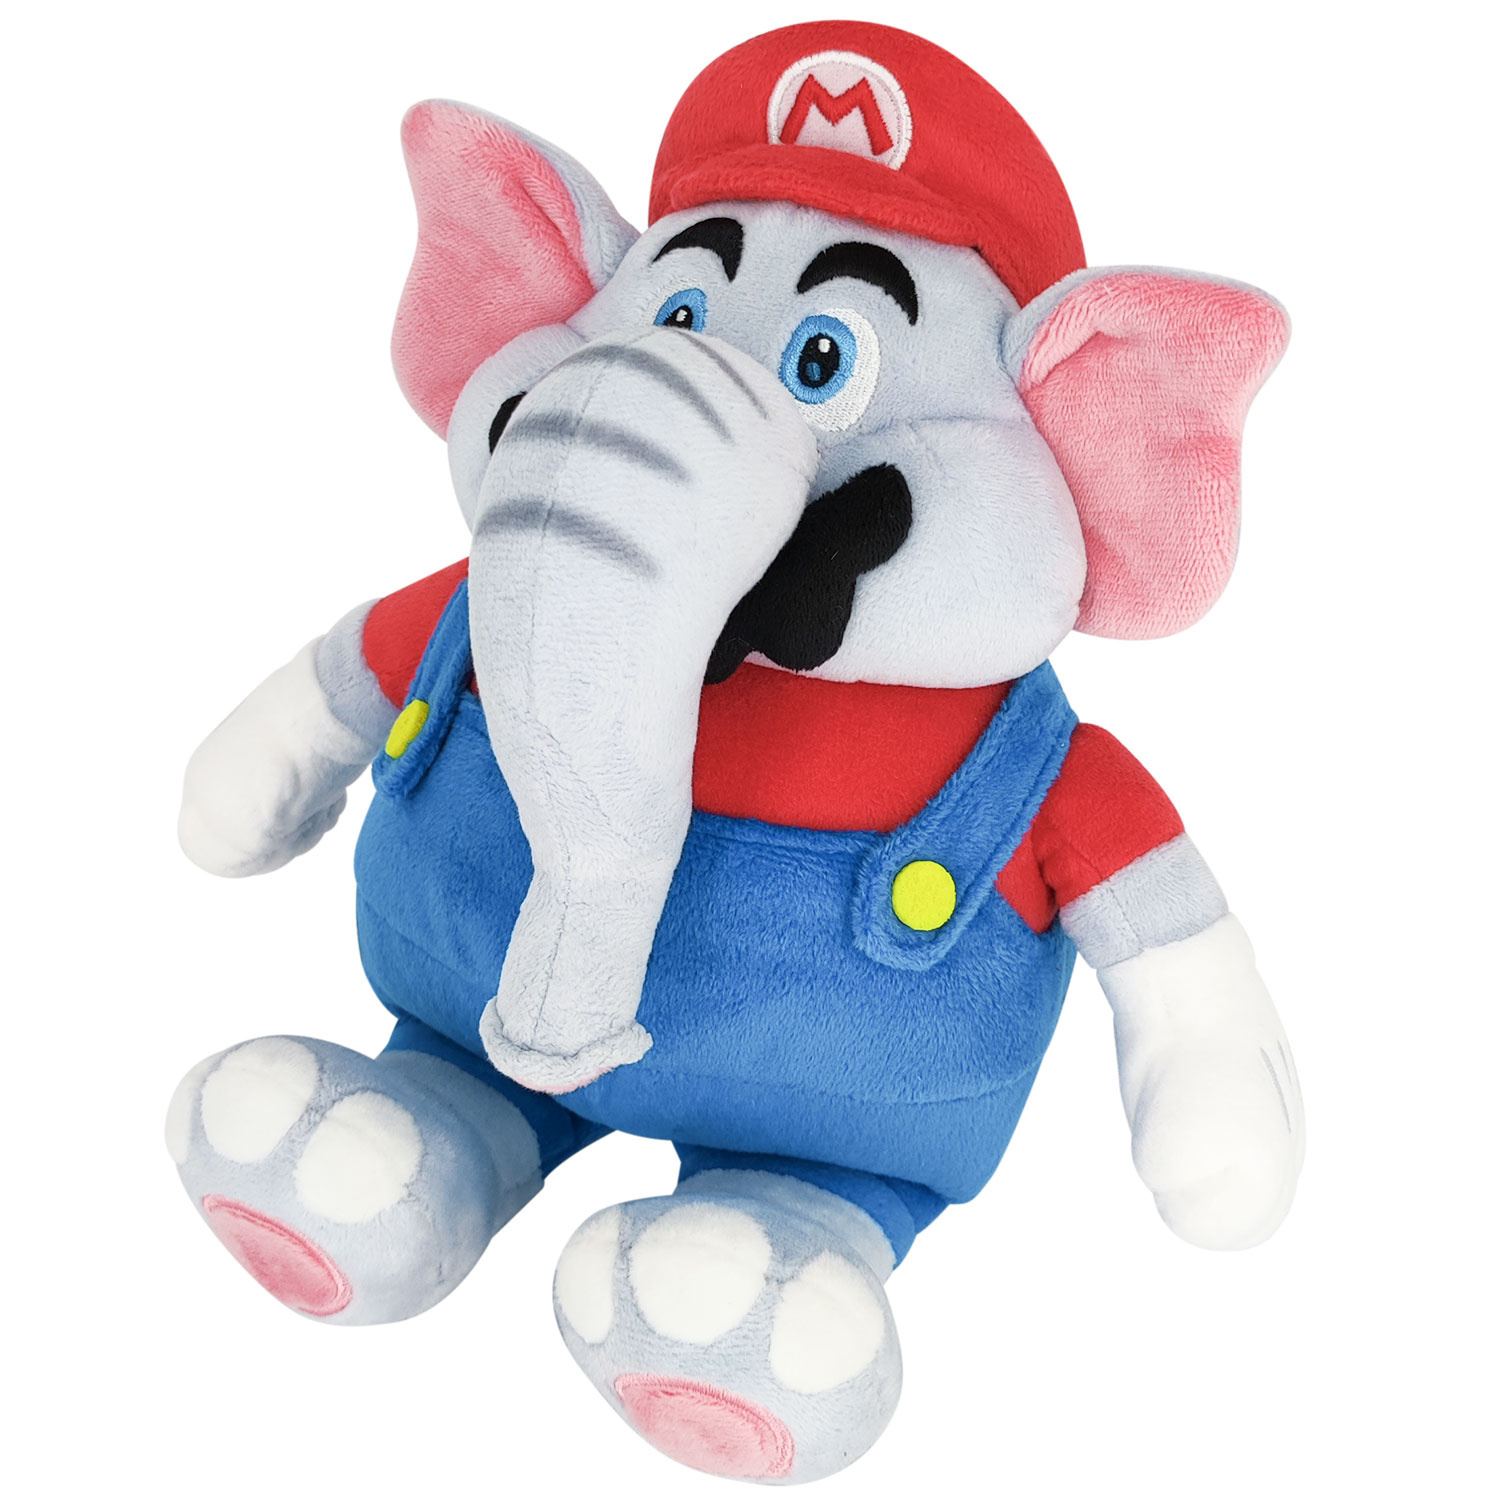 Super Mario Bros. Wonder' preview: designers discuss the elephant